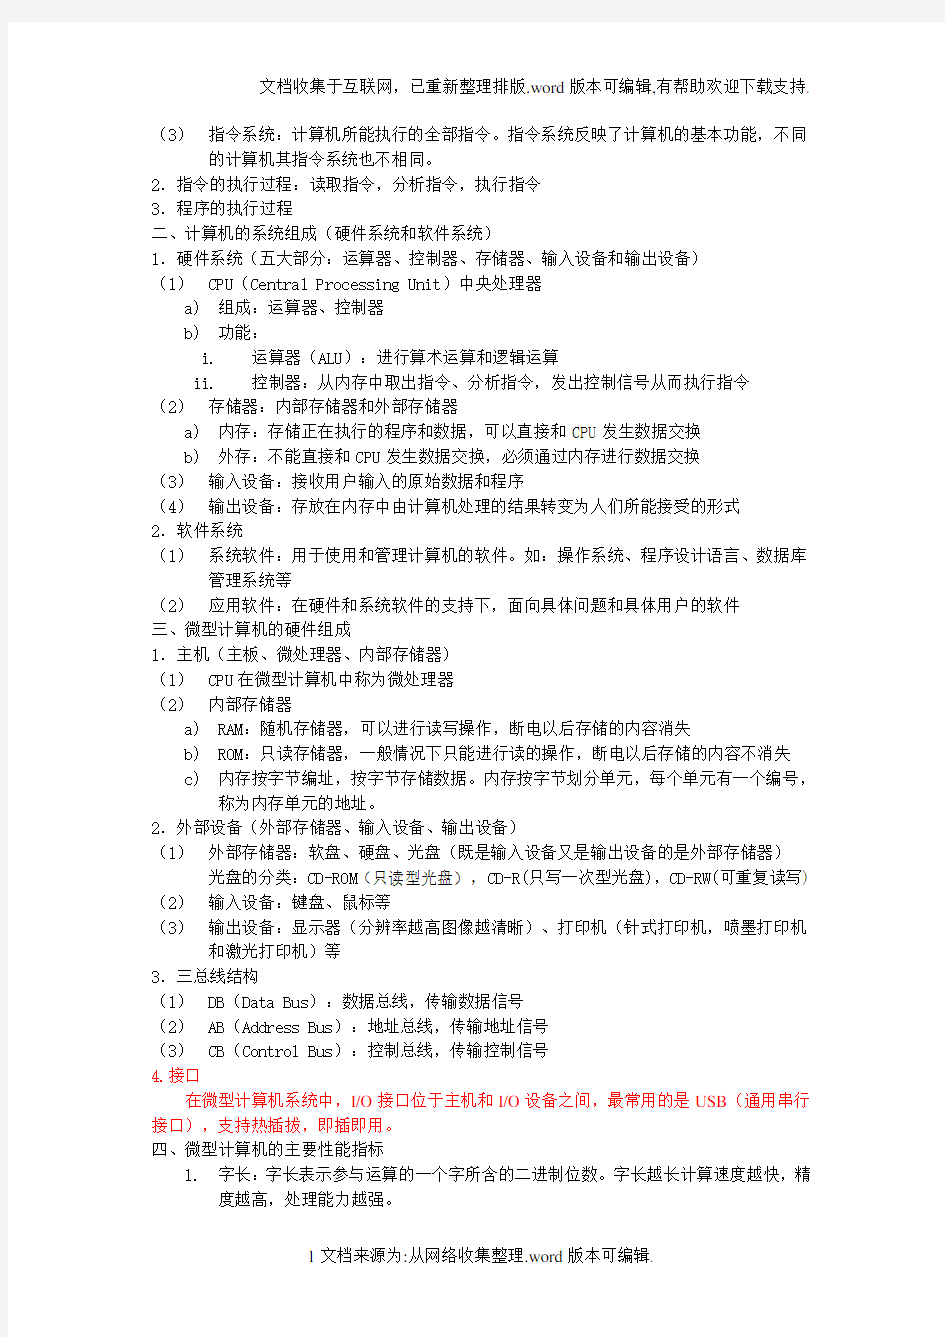 四川大学【大学计算机基础知识点整理】12修订版